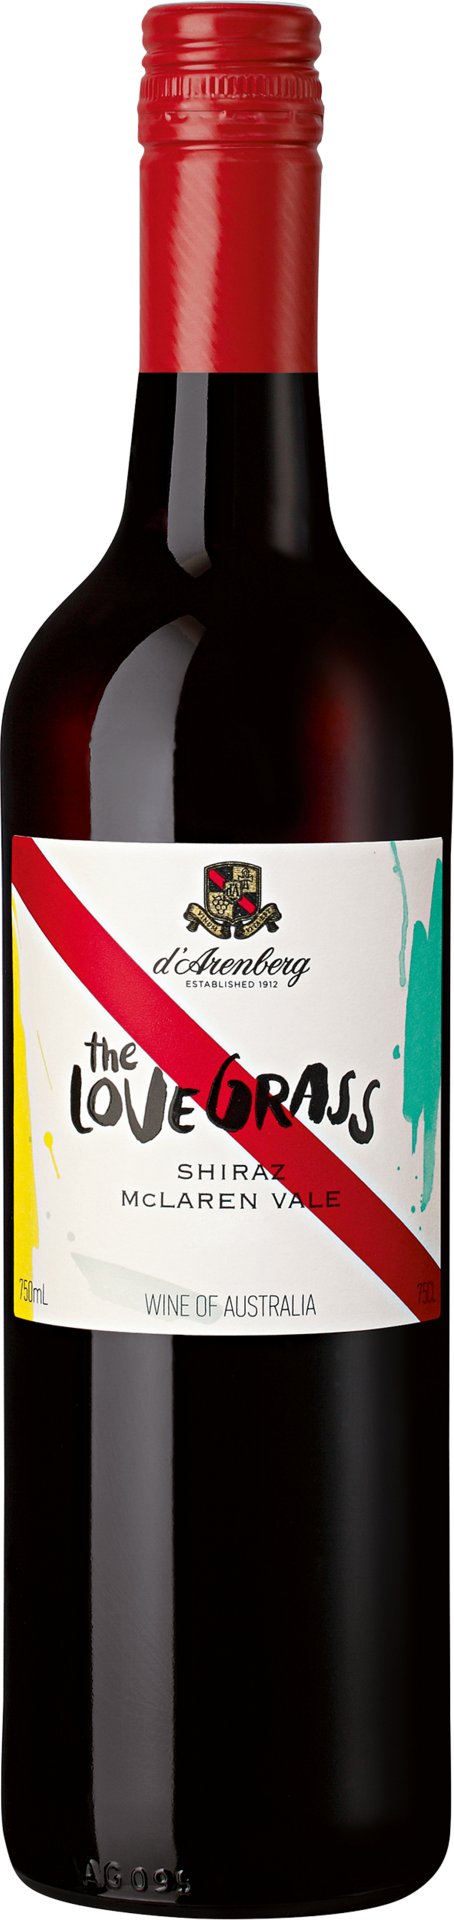 The Love Grass Shiraz d'Arenberg